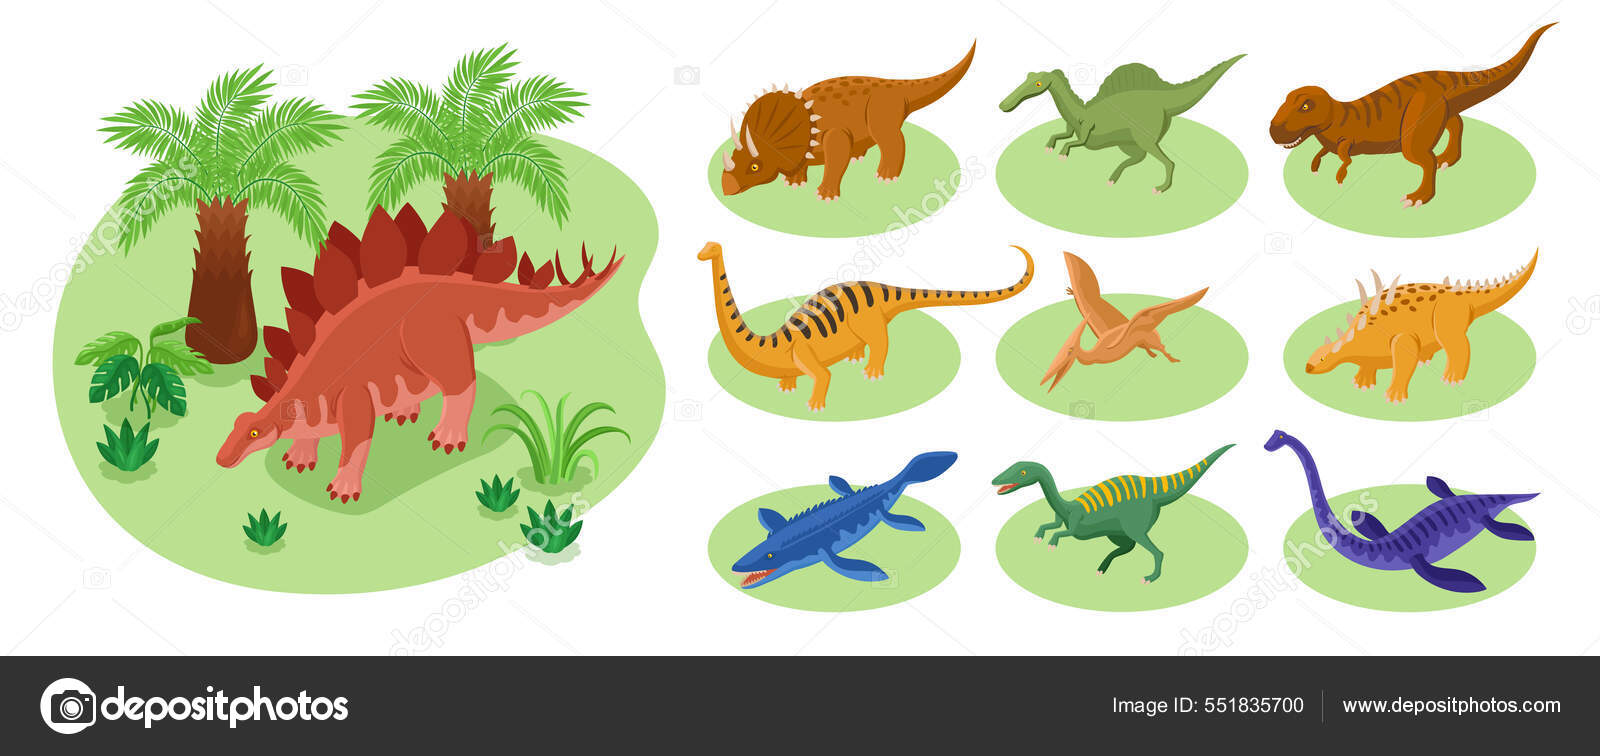 Vetores e ilustrações de Dinossauro gigante para download gratuito